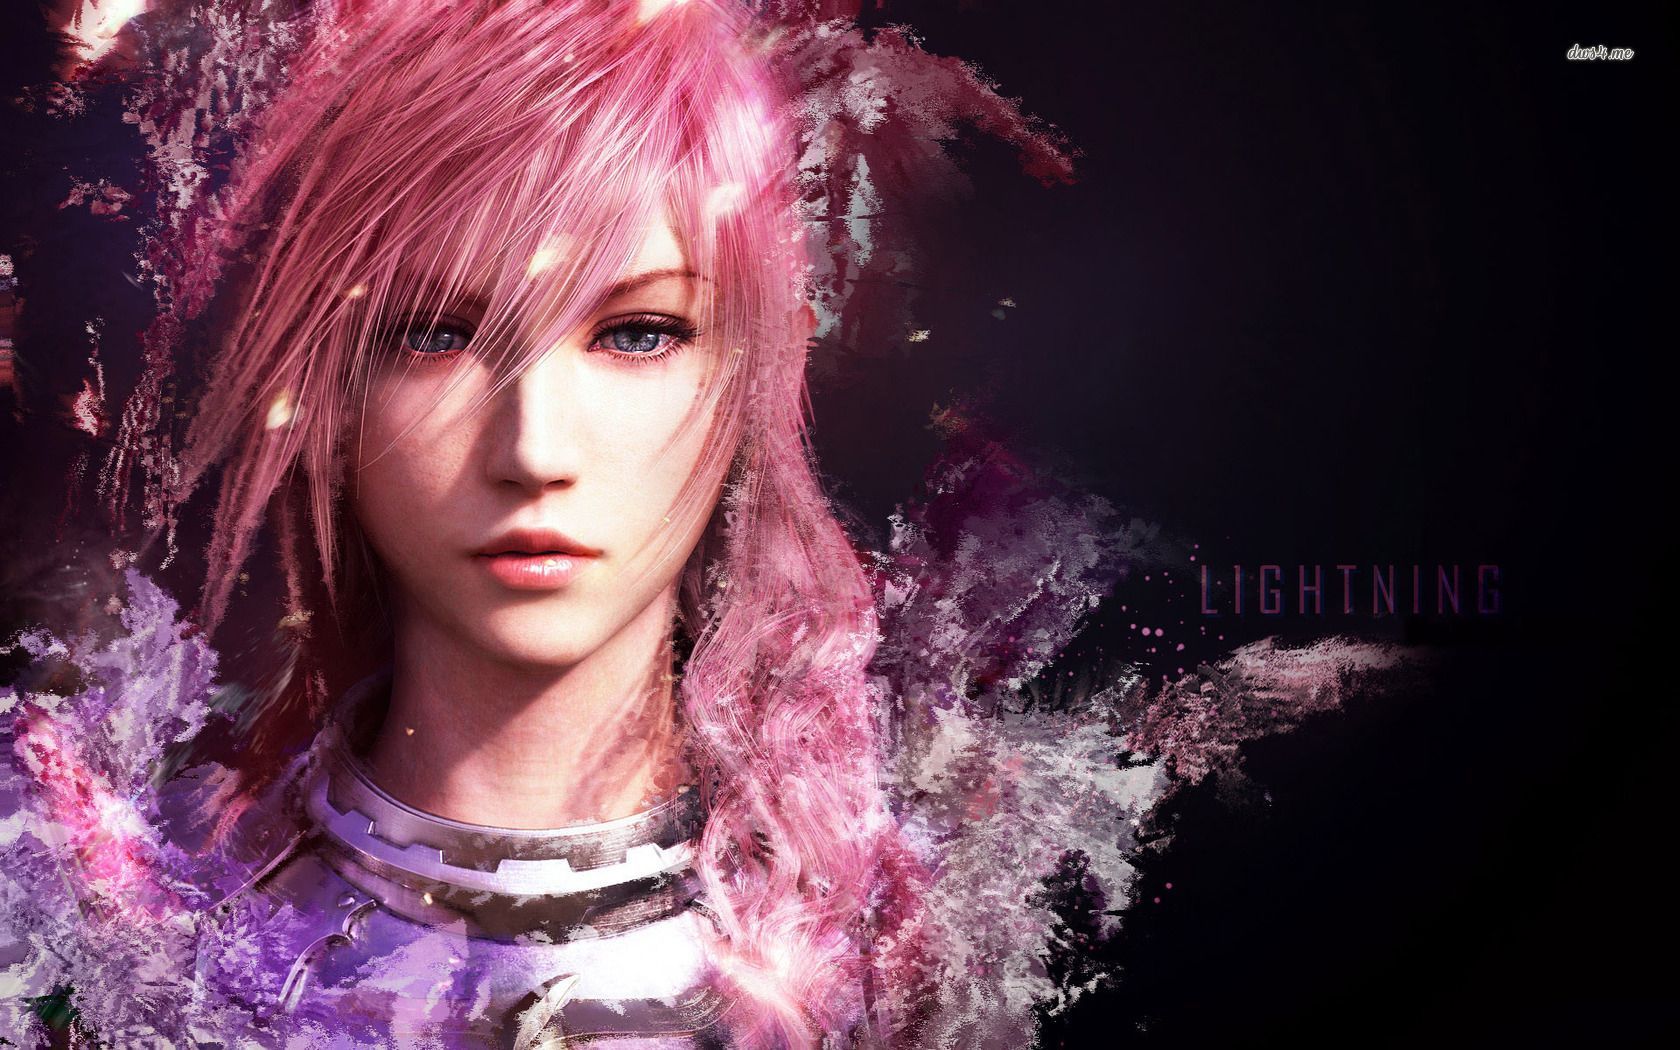 Lightning Fantasy XIII 2 HD Wallpaper. Lightning Final Fantasy, Girl With Pink Hair, Cute Girl Wallpaper